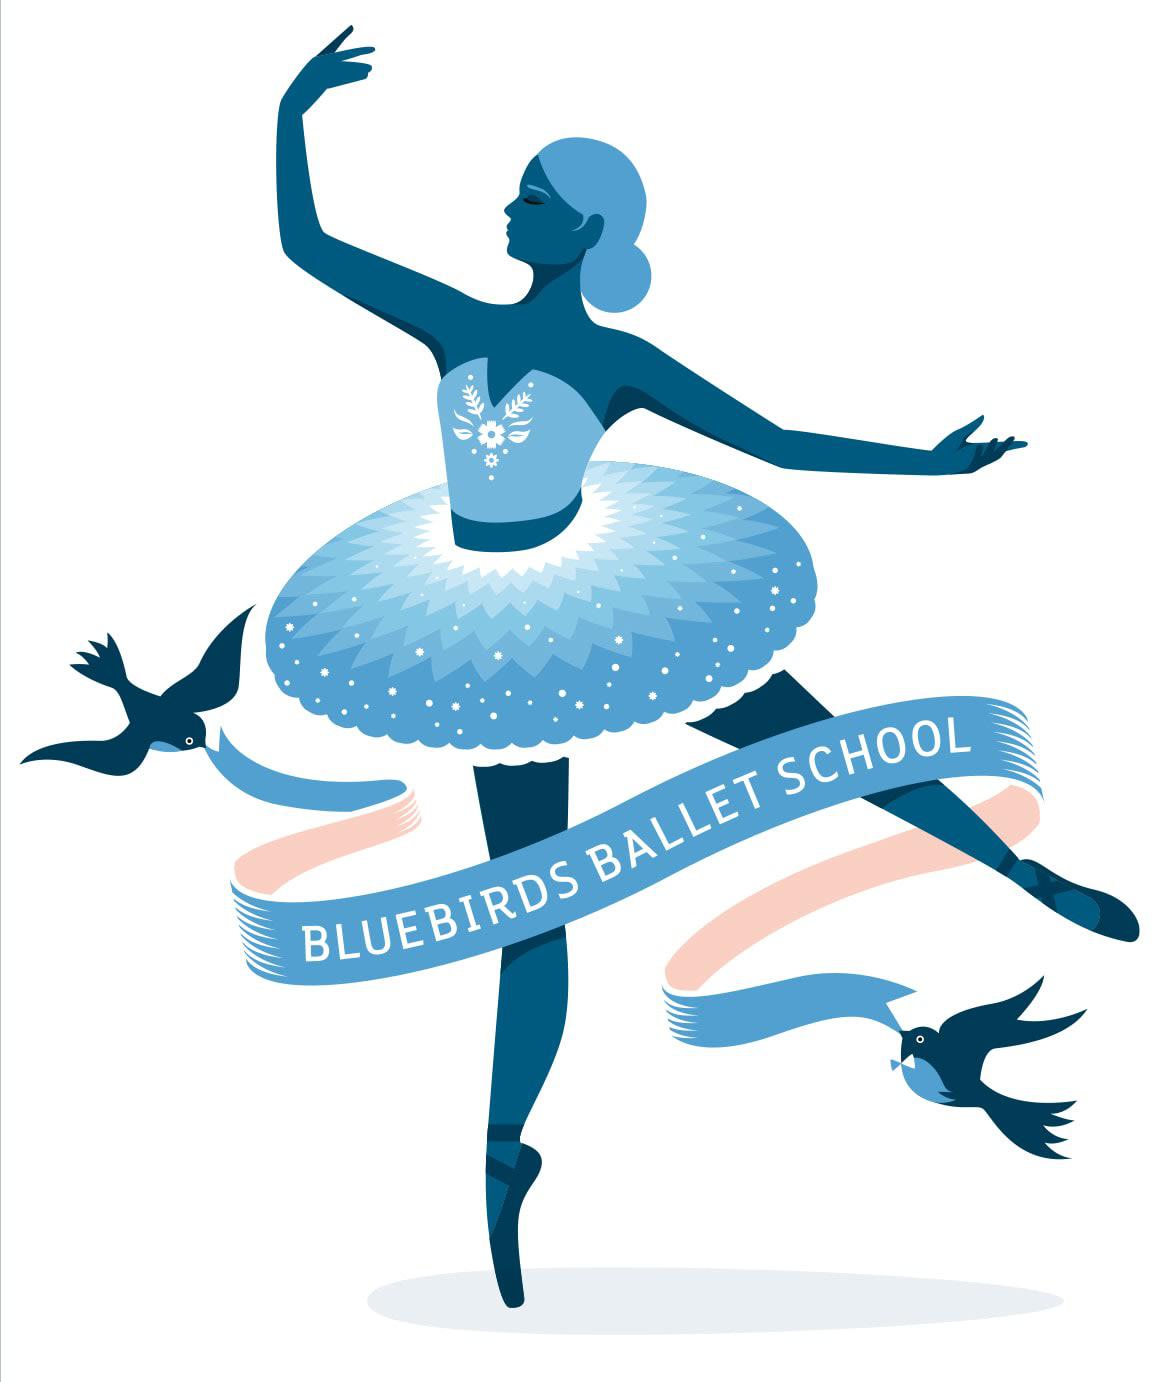 Images Bluebirds Ballet School